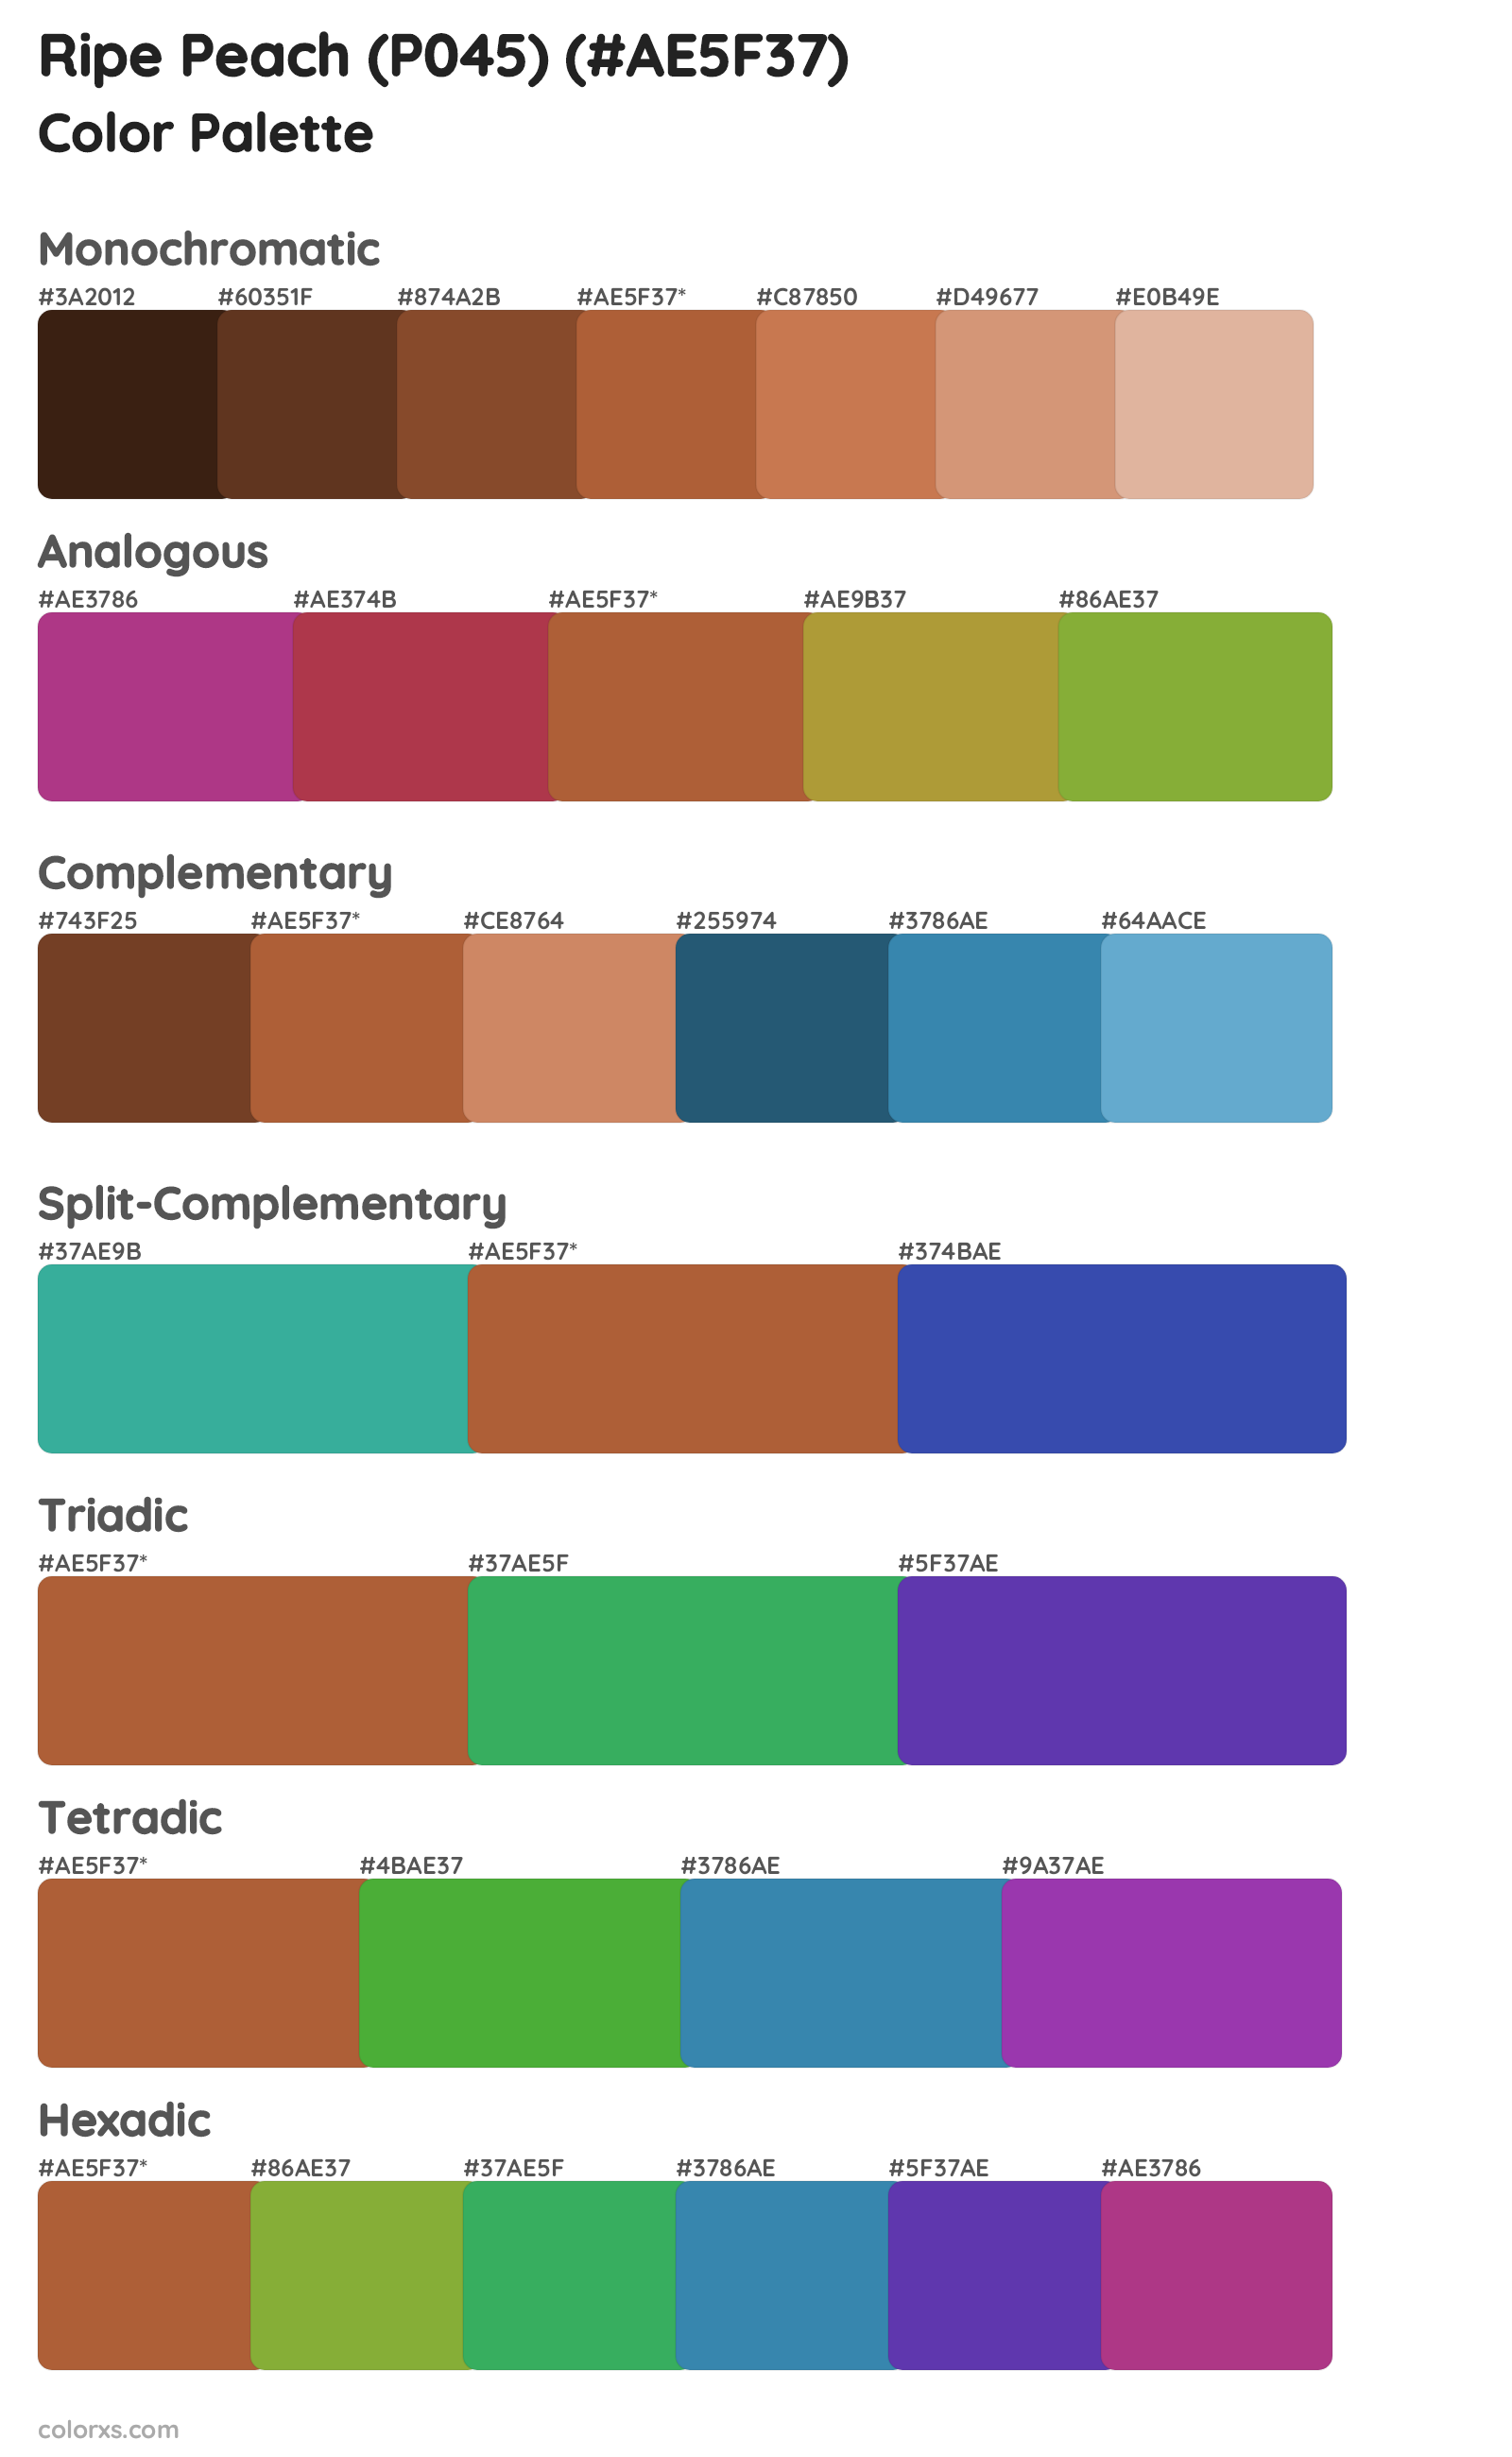 Ripe Peach (P045) Color Scheme Palettes